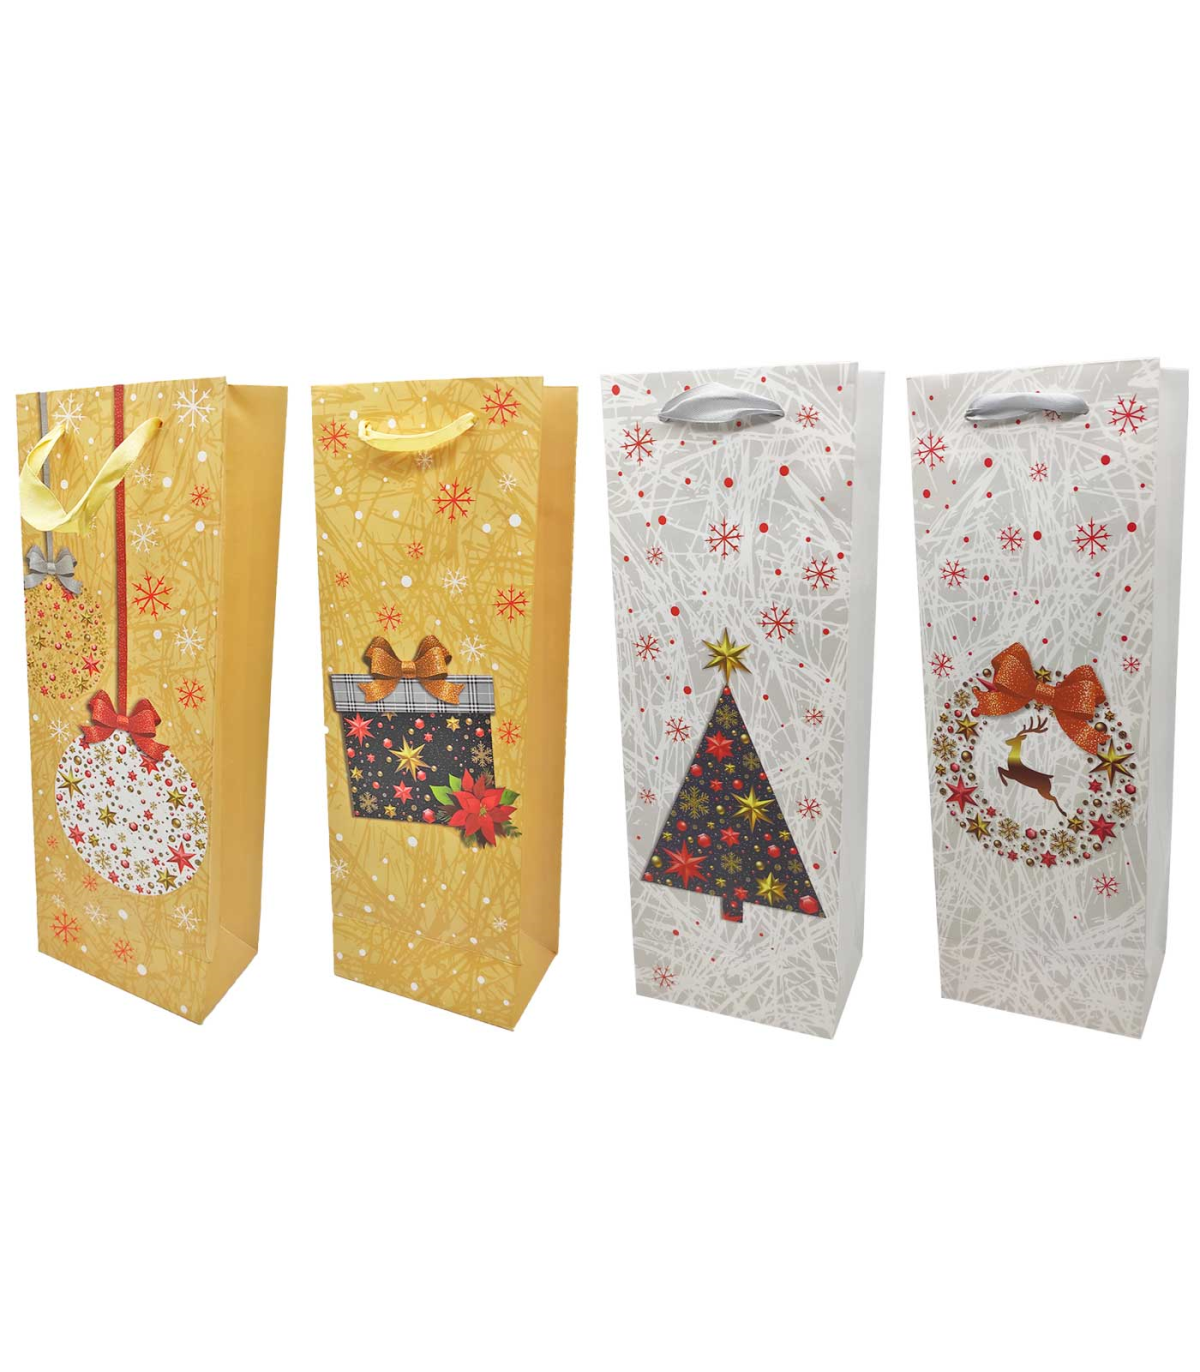 Tradineur - Bolsa de cartón para botella de vino con diseños navideños,  bolsa de regalo con asas para envolver champán, 36 x 12